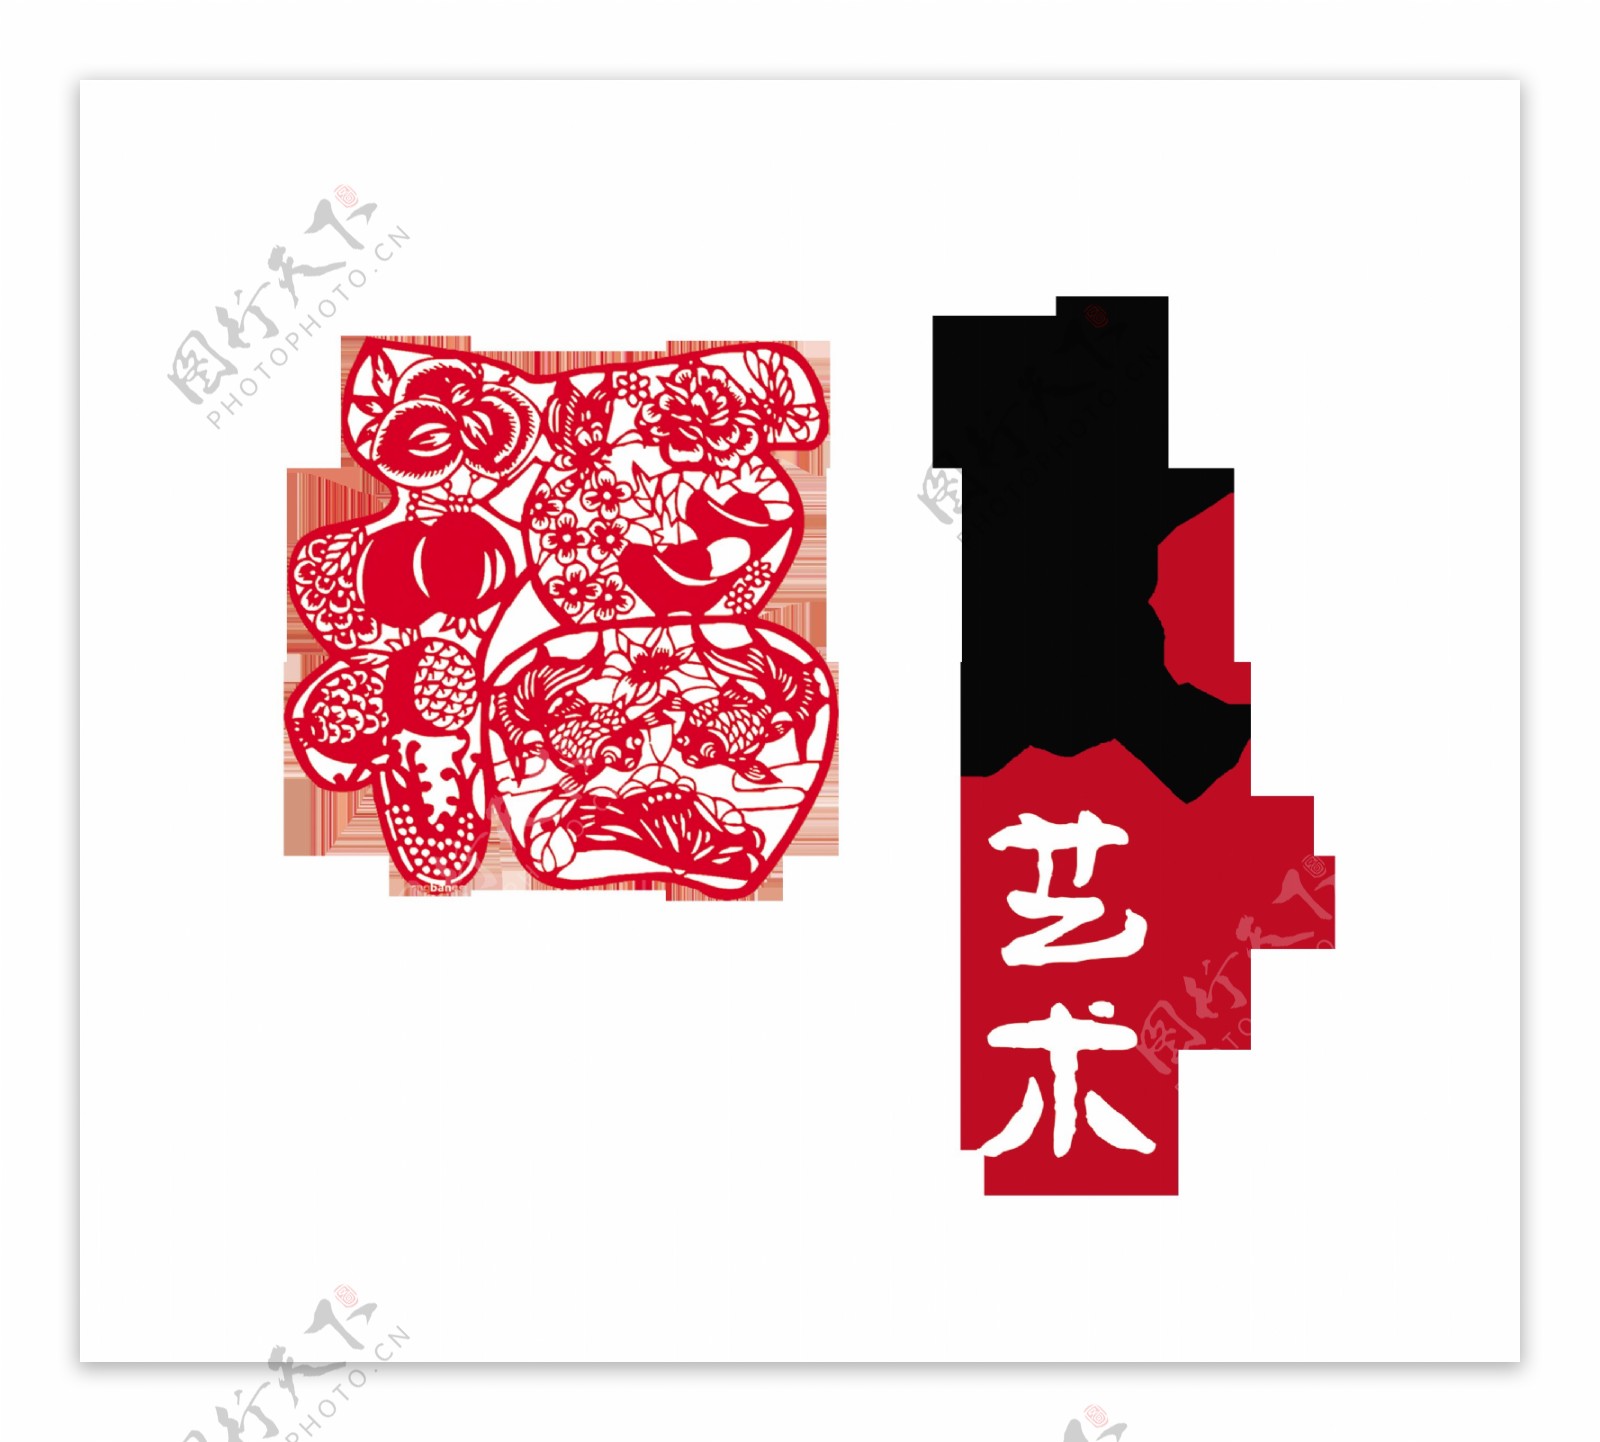 剪纸艺术传统文化传承中国风艺术字设计